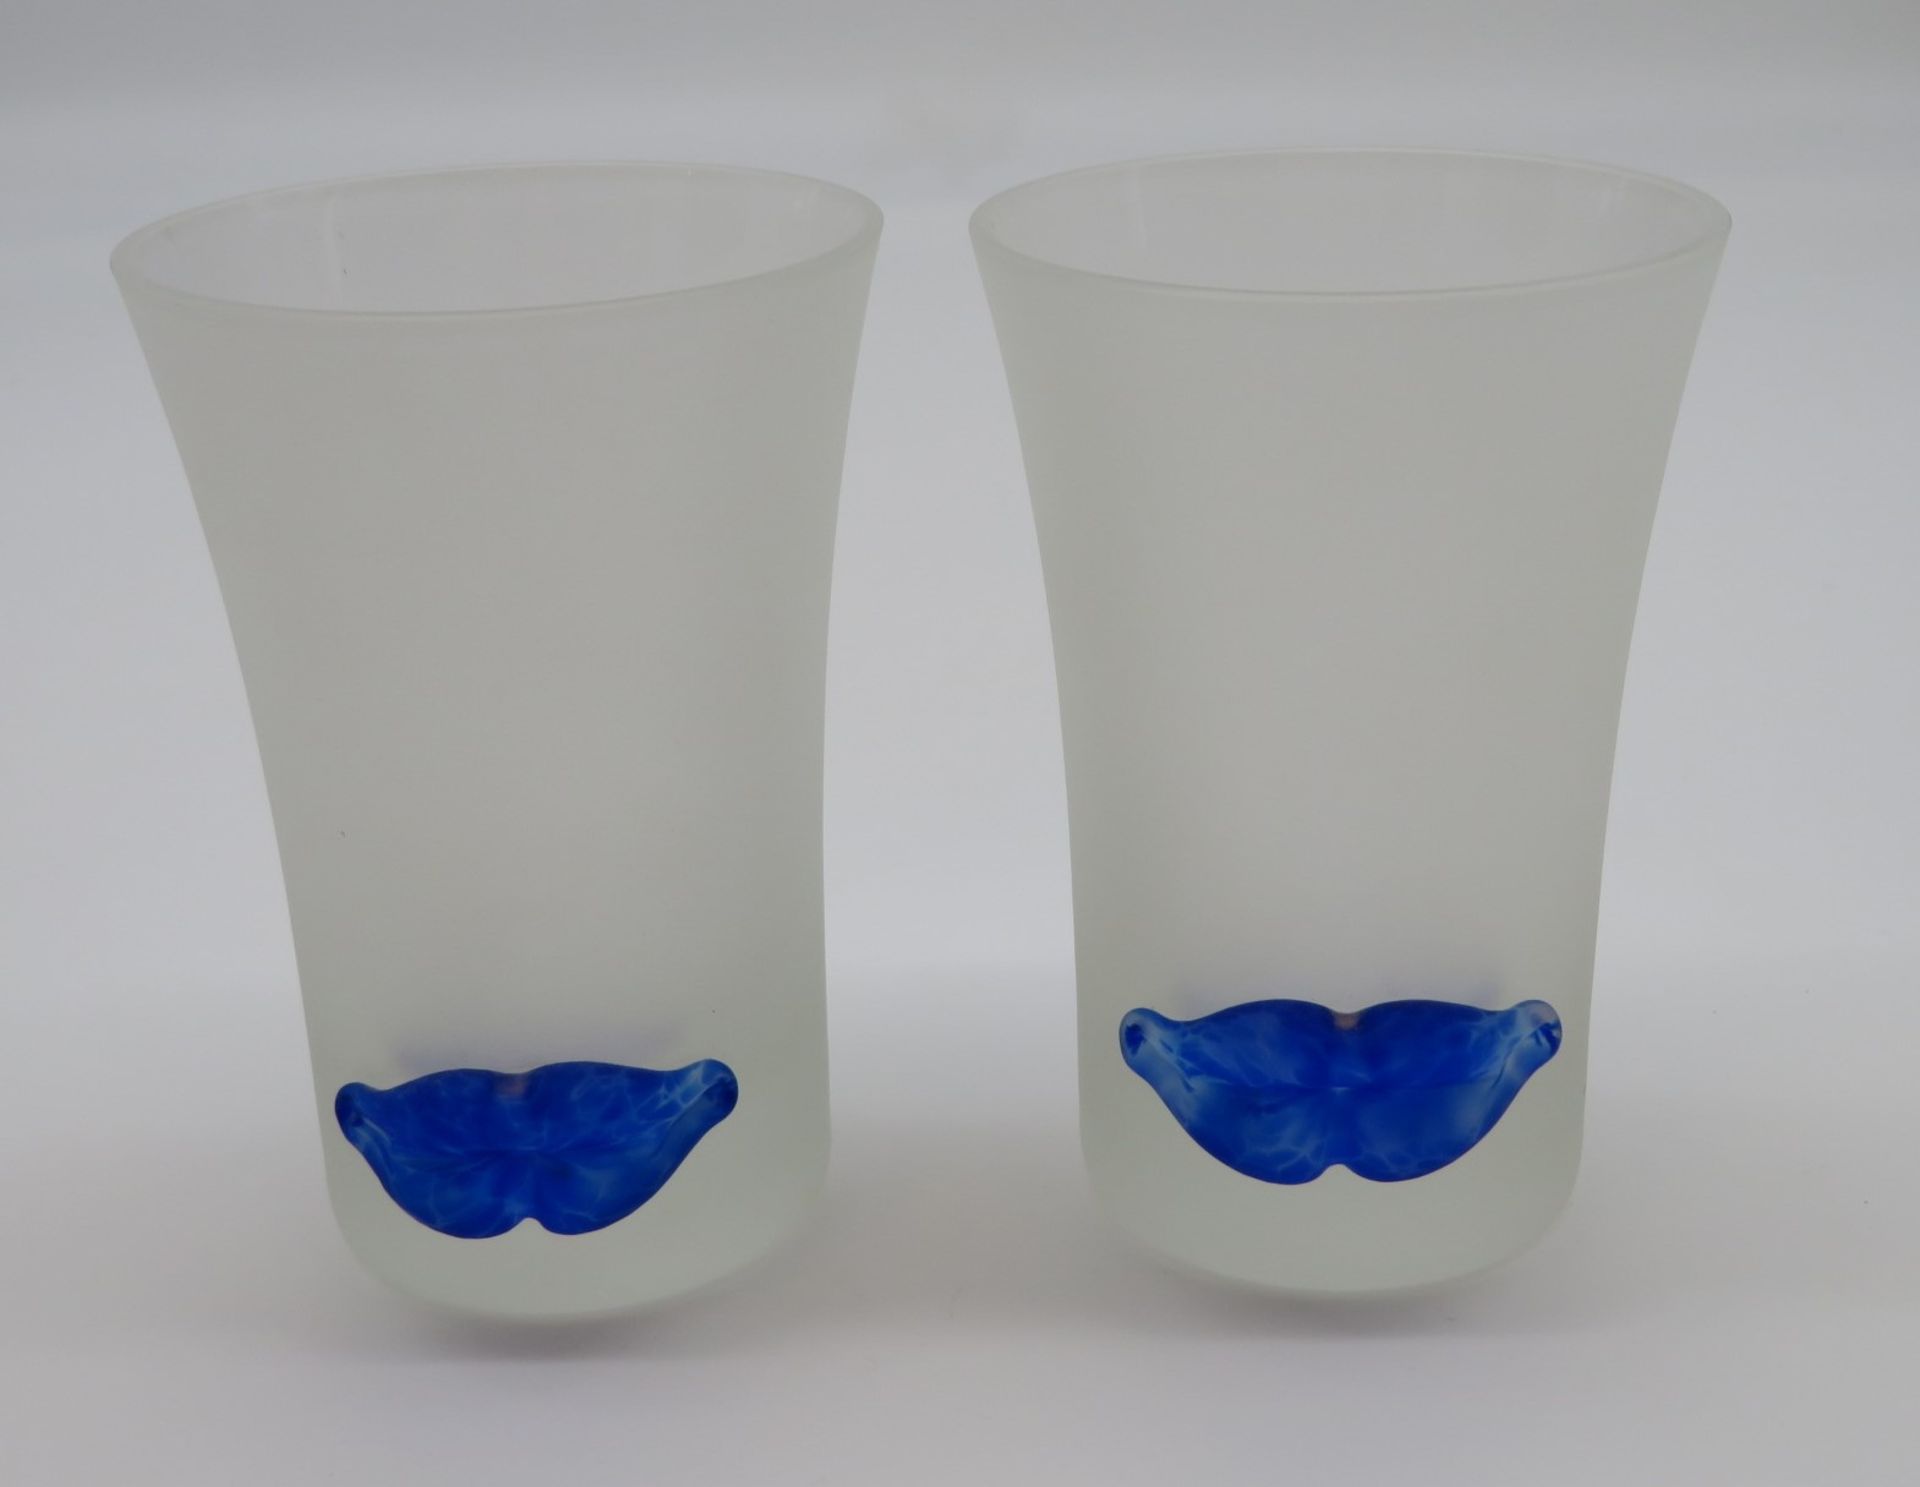 2 Designer Gläser, Borowski Glasstudio Königswinter, satiniertes Glas mit aufgesetzten blauen, gesp